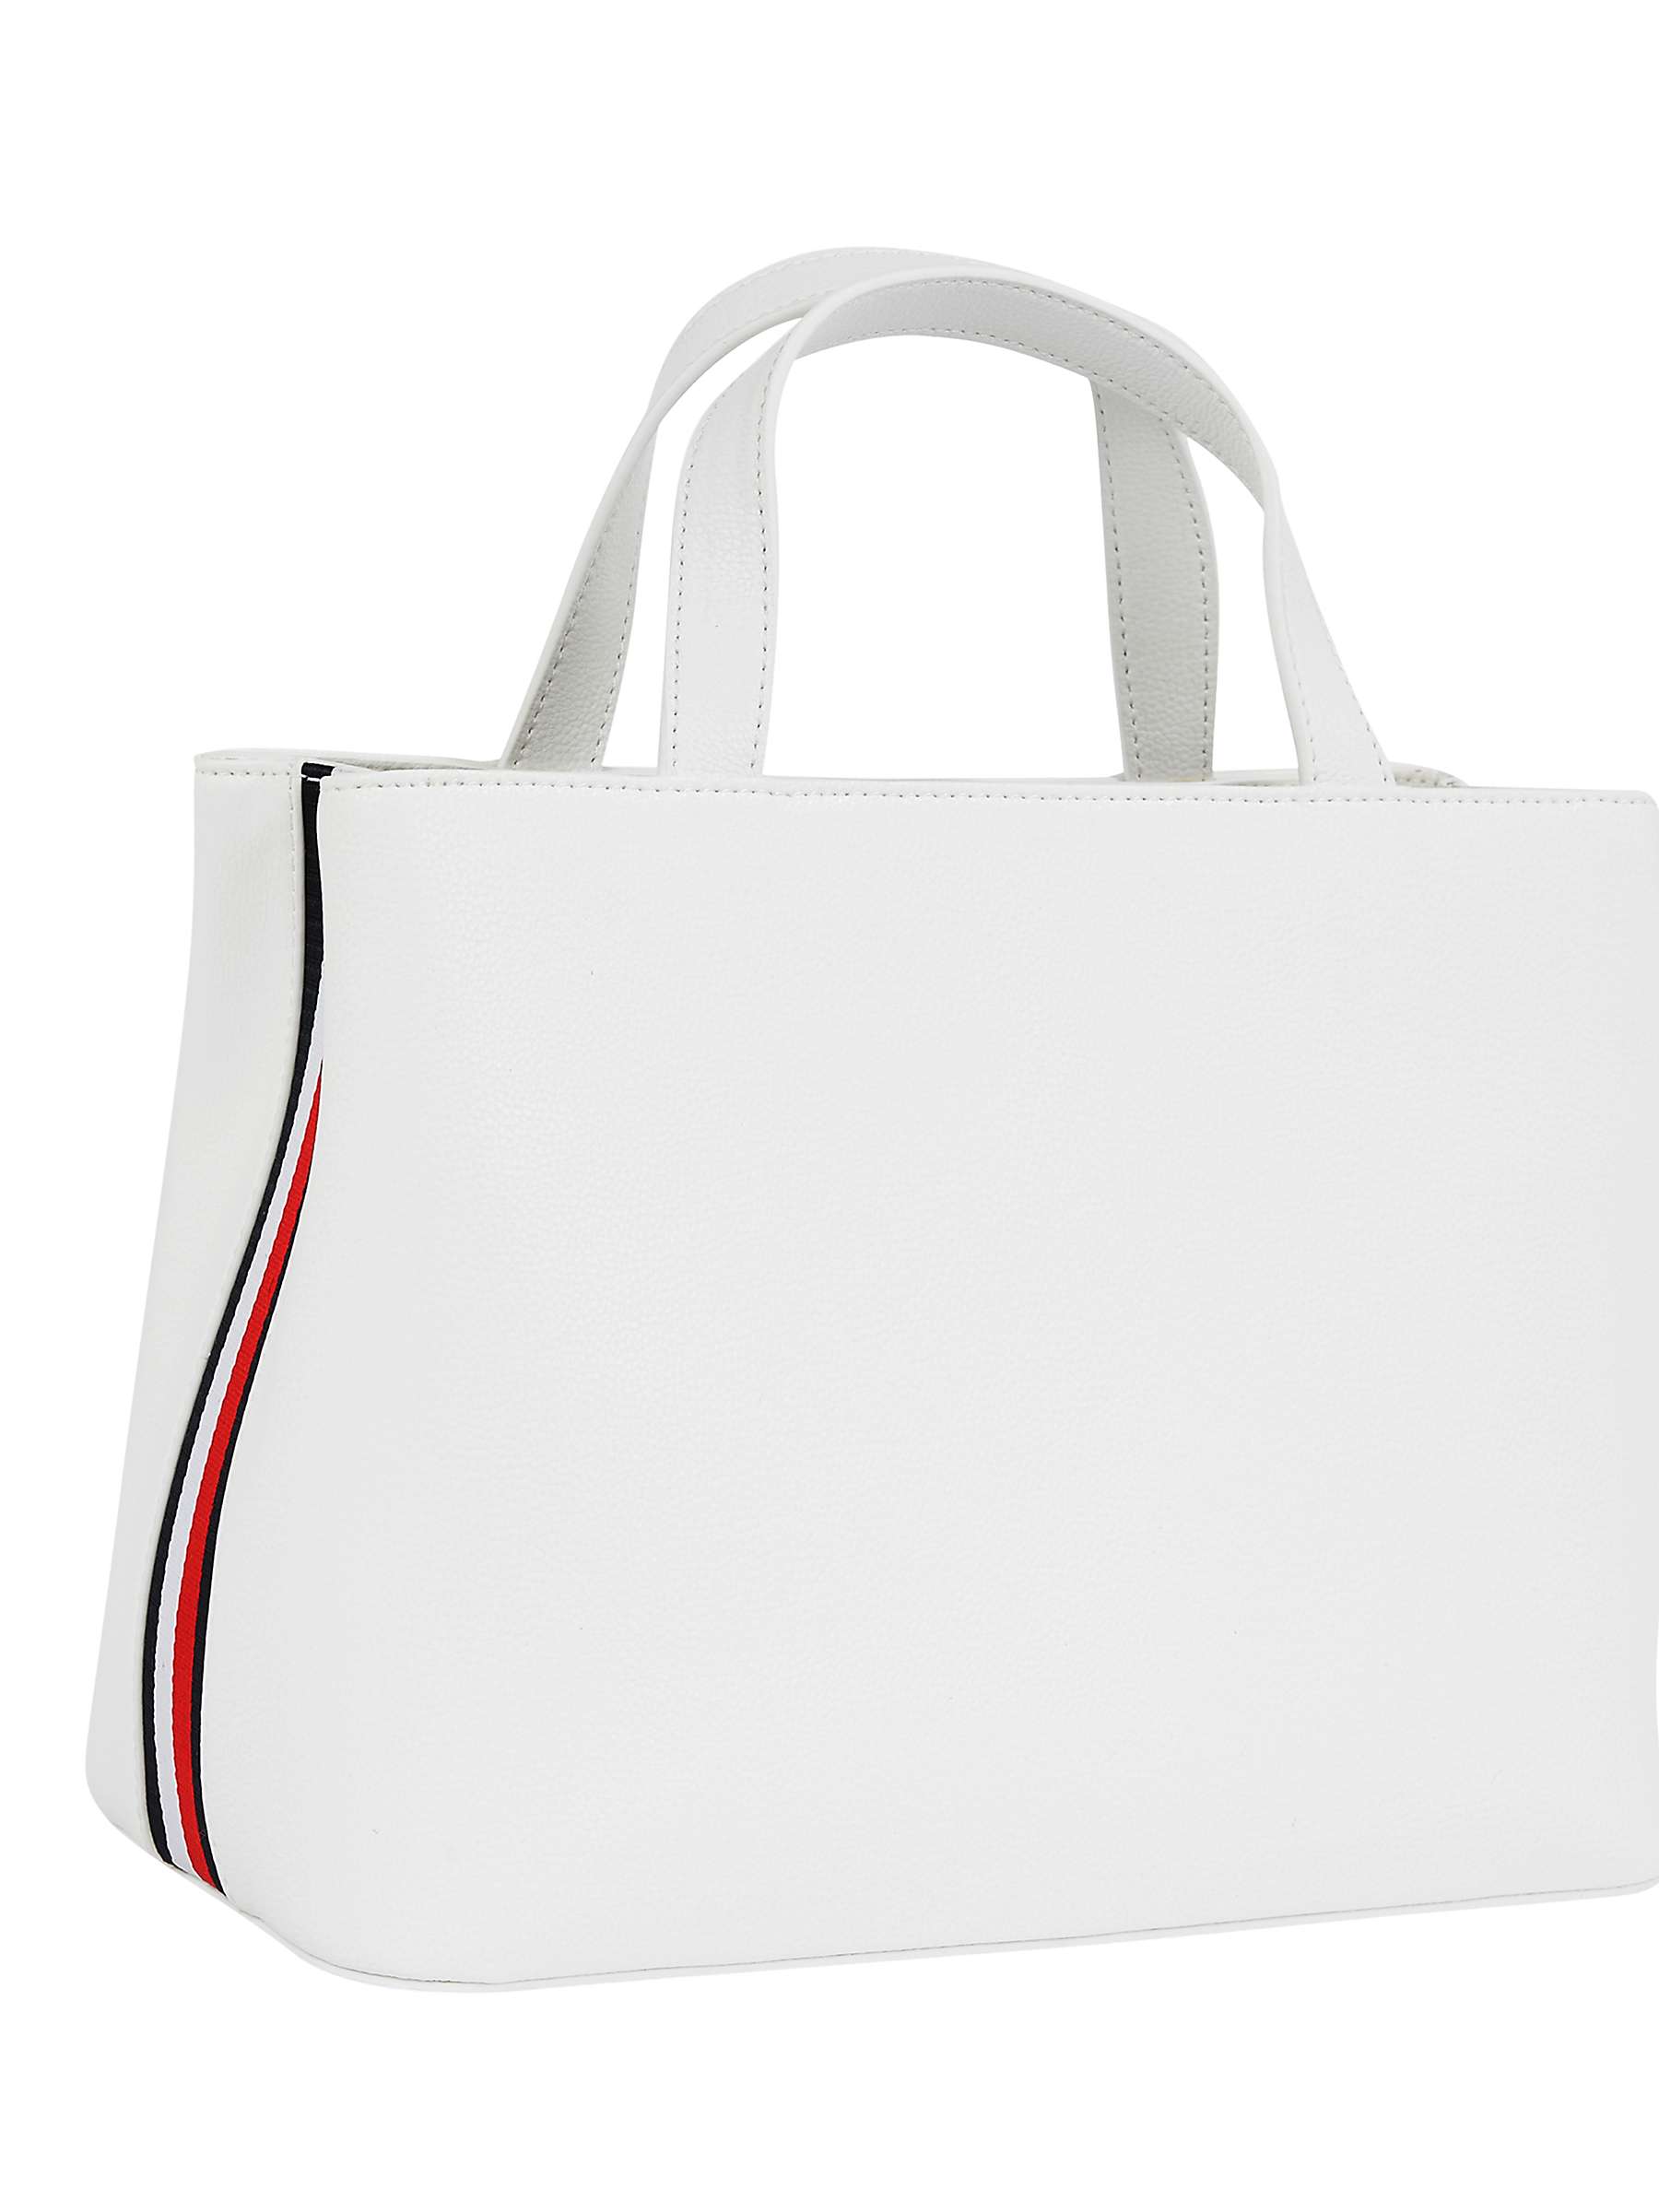 Buy Tommy Hilfiger Essential Satchel Bag, Ecru Online at johnlewis.com